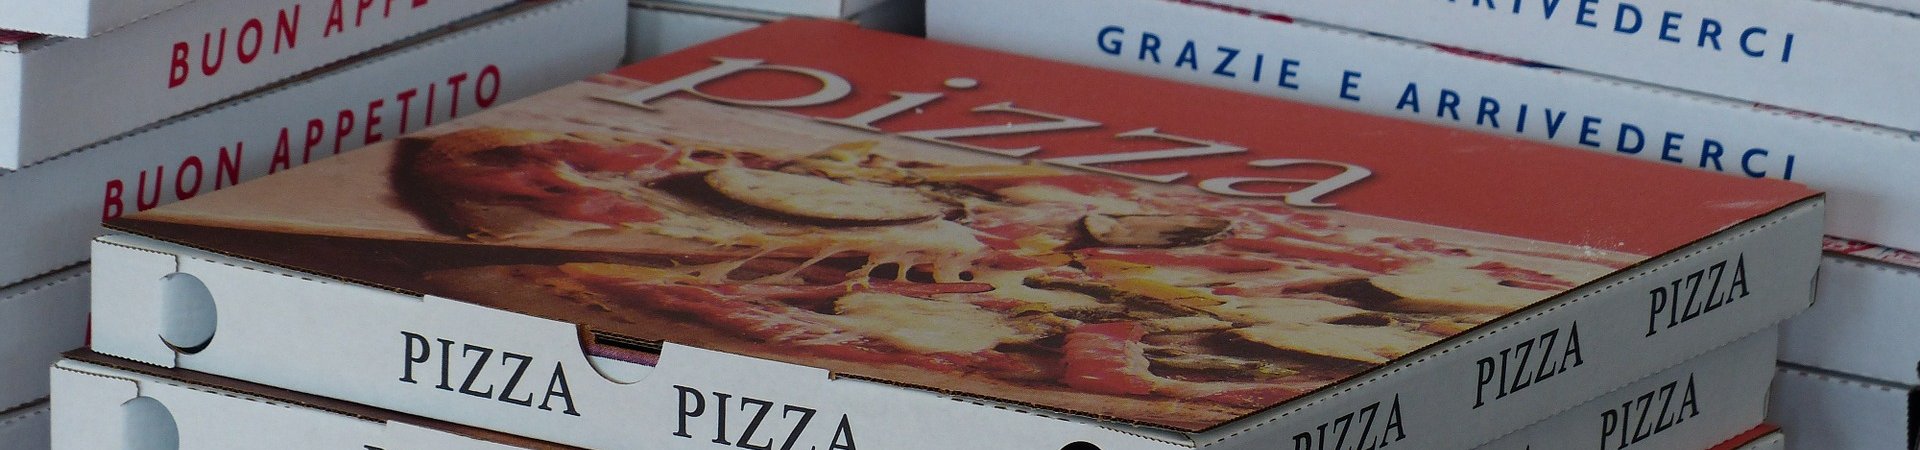 Pizzadozen afhaal- en bezorgrestaurant. Foto: Hans Braxmeier Pixabay